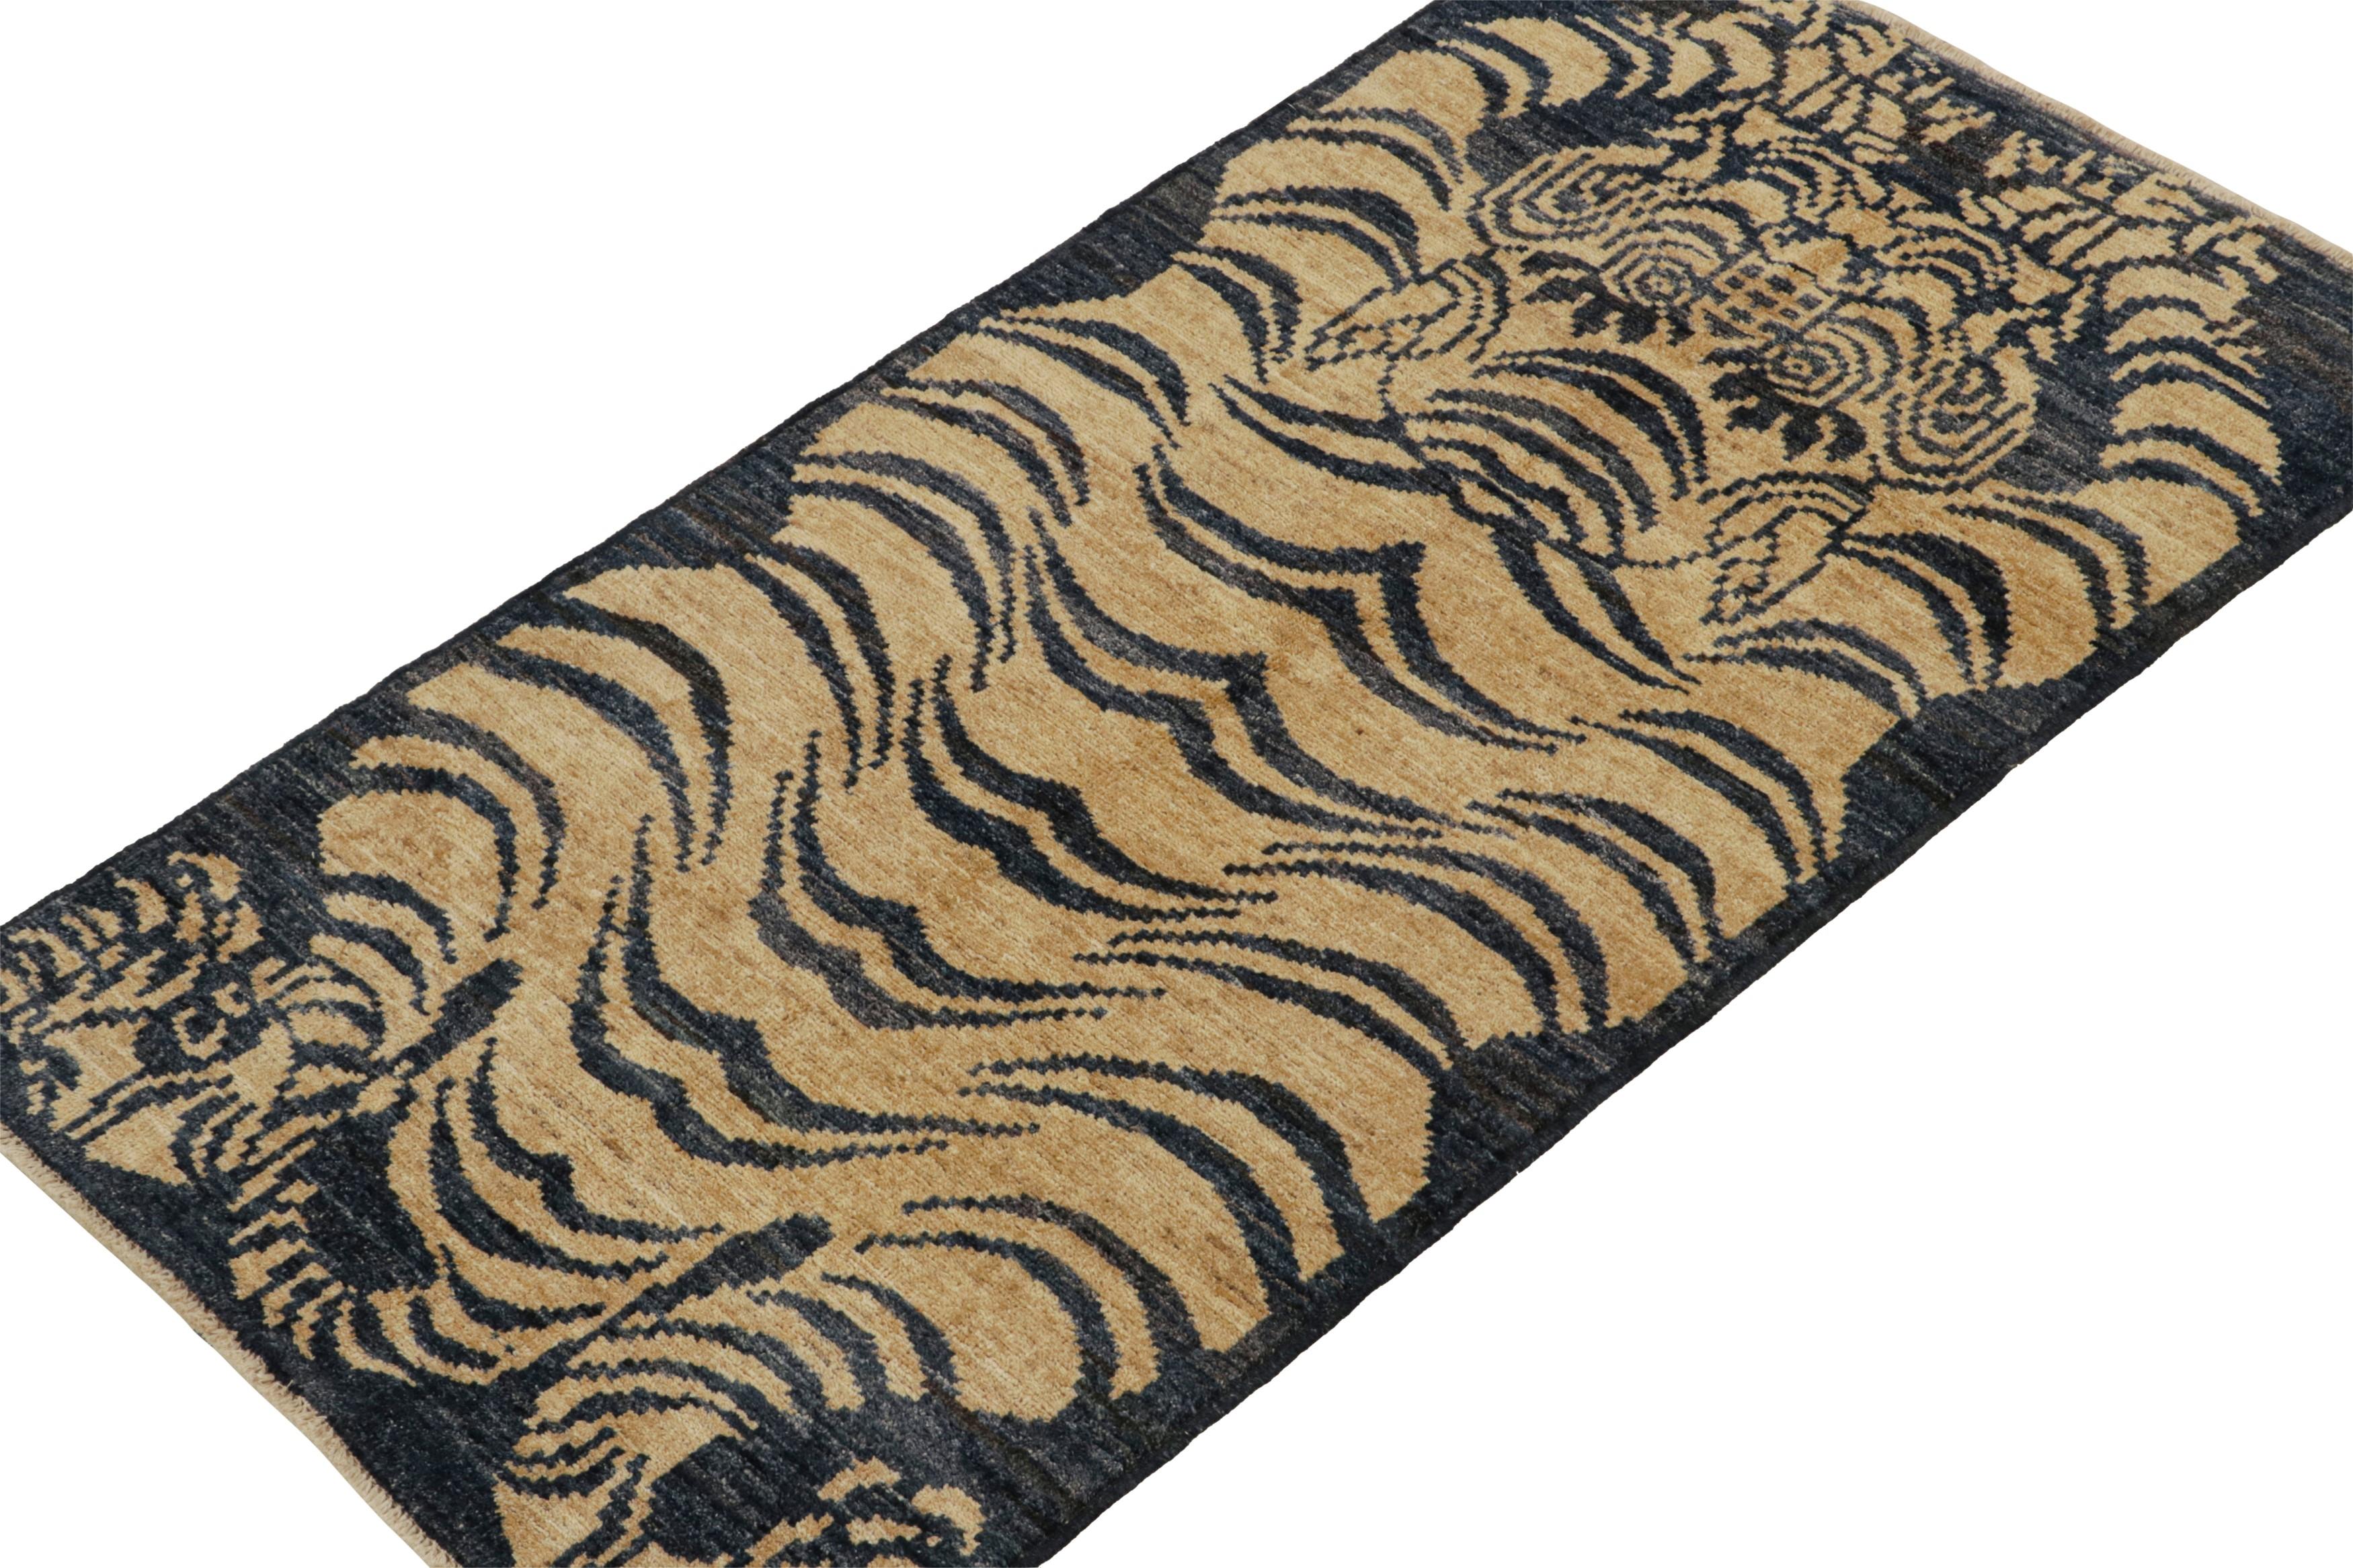 Ce tapis tigré contemporain 3x6 est un nouvel ajout audacieux à la Collection Tigres de Rug & Kilim. Notre collection s'étend sur plusieurs cultures et reprend les styles picturaux emblématiques de l'art populaire et des tapis orientaux anciens